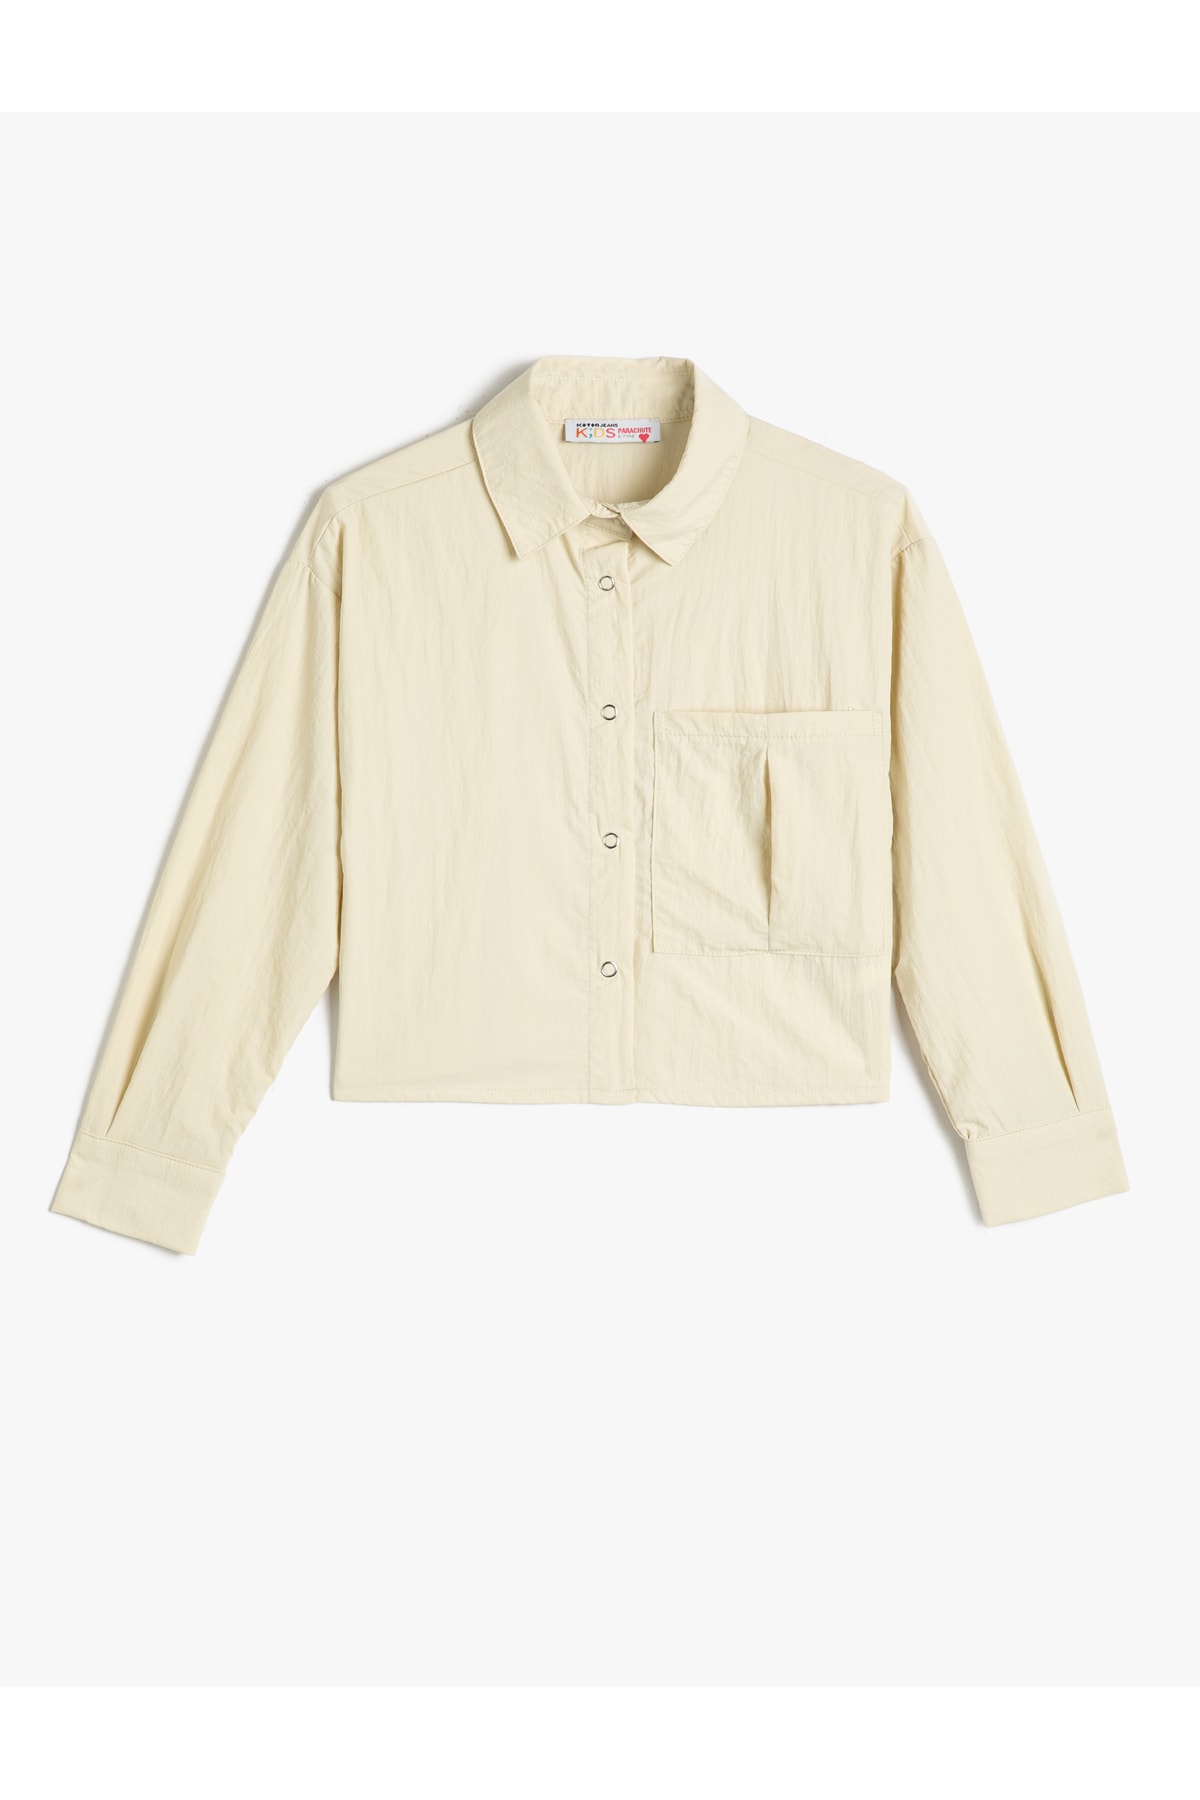 Levně Koton Shirt Long Sleeve Wide Pocket Detail Parachute Fabric Snap Buttons